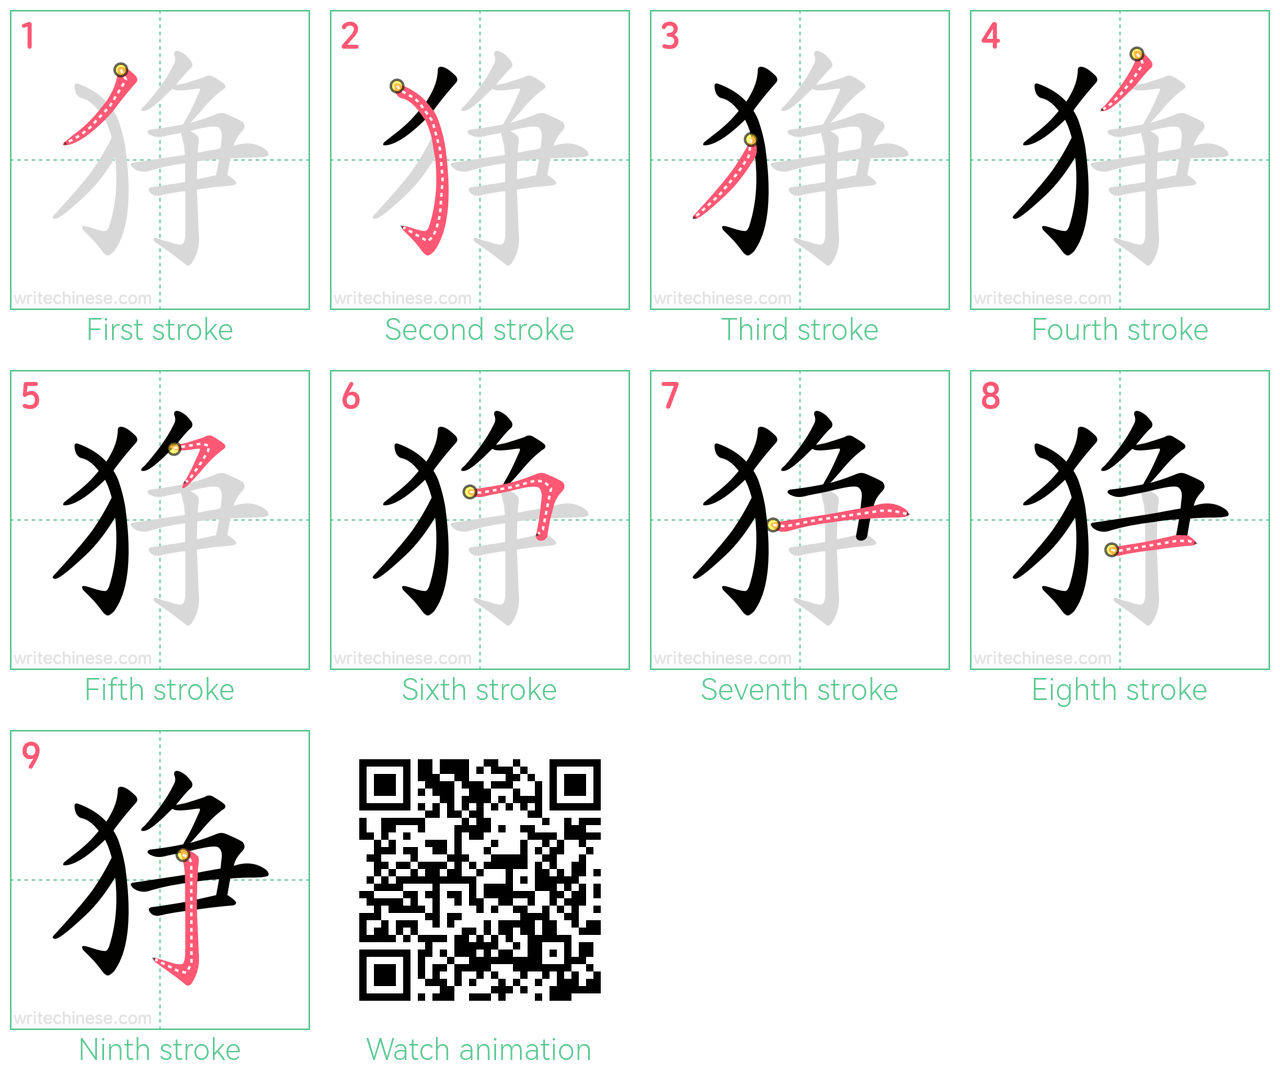 狰 step-by-step stroke order diagrams